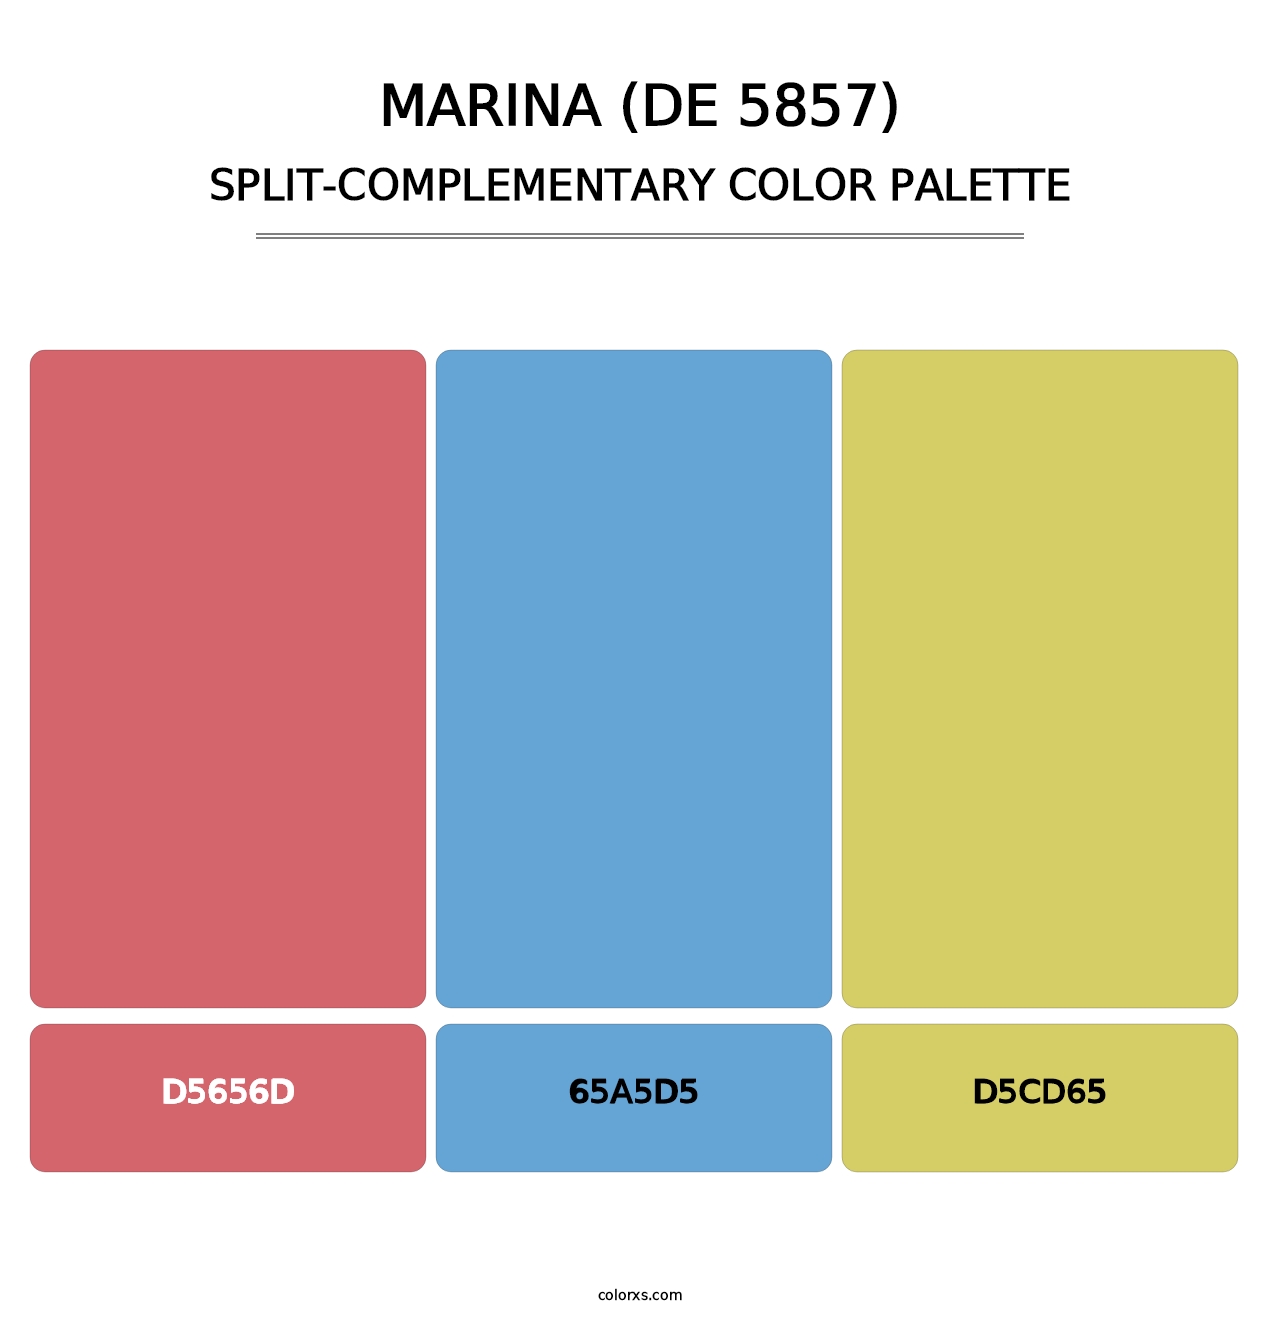 Marina (DE 5857) - Split-Complementary Color Palette